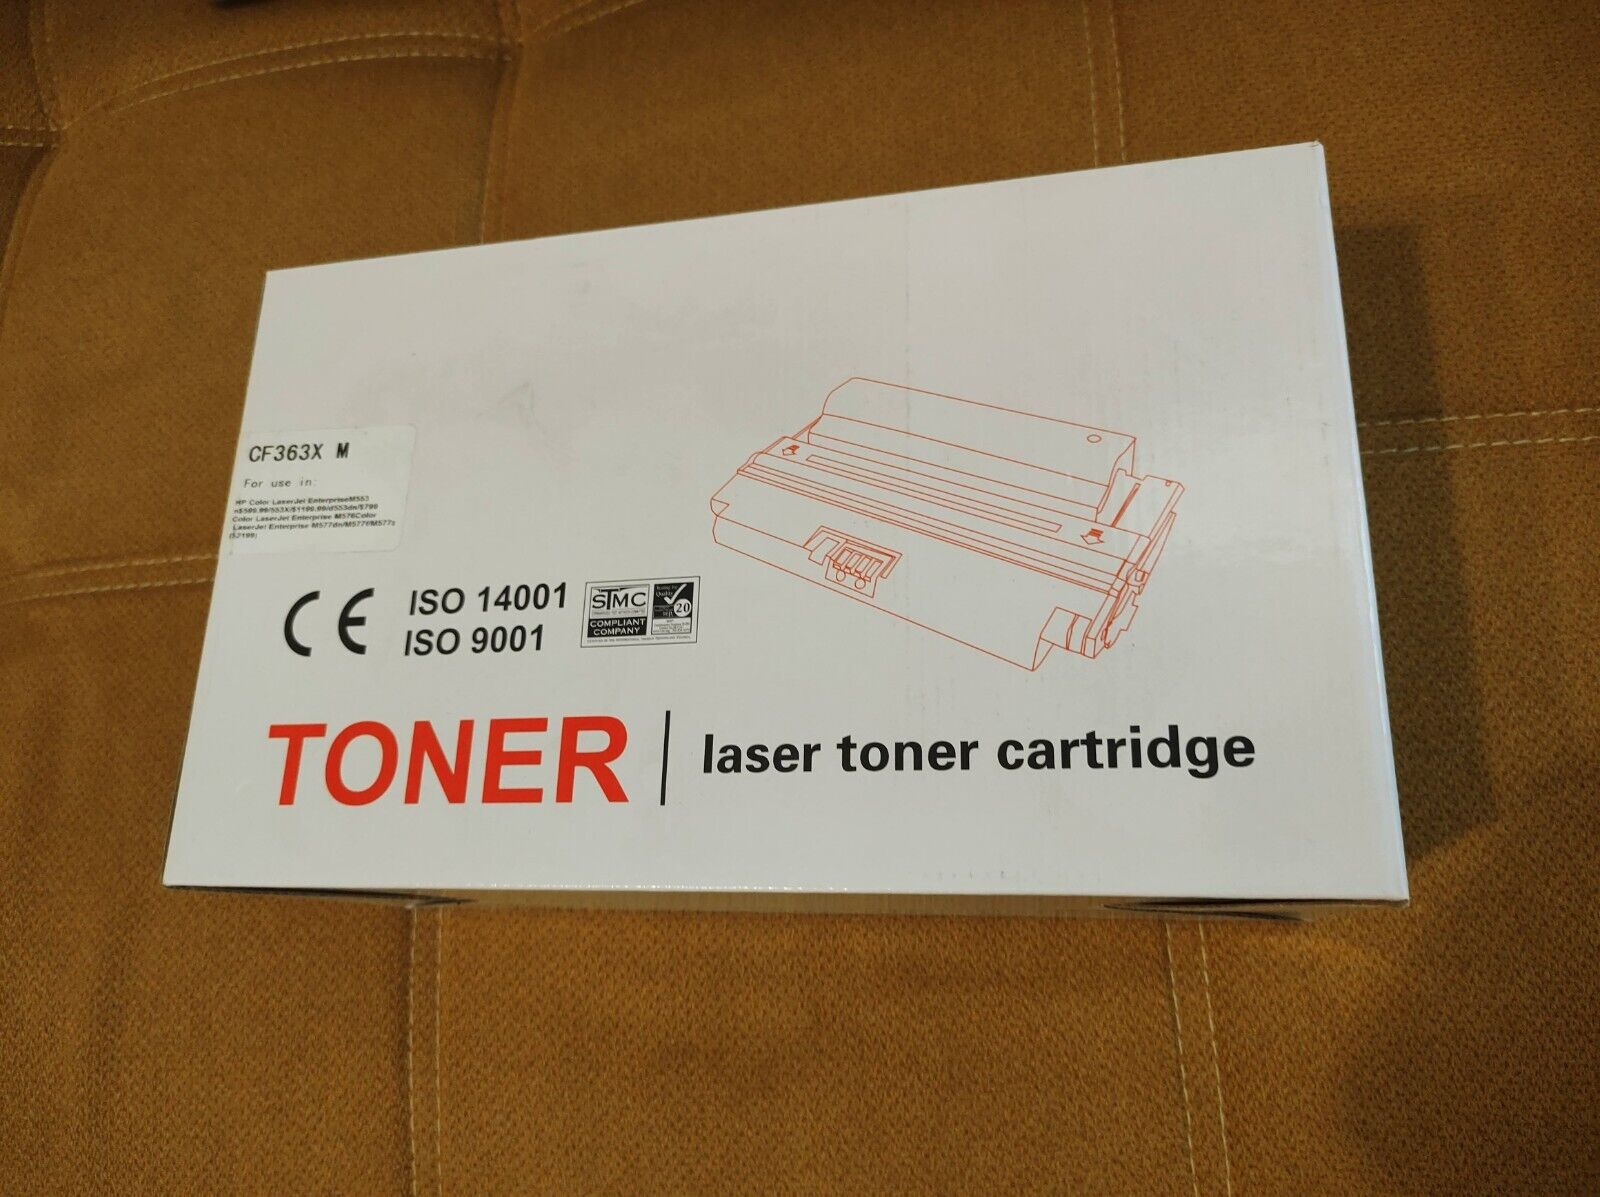 NEW Laser Toner Cartridge CF 363X M Unopened Unused